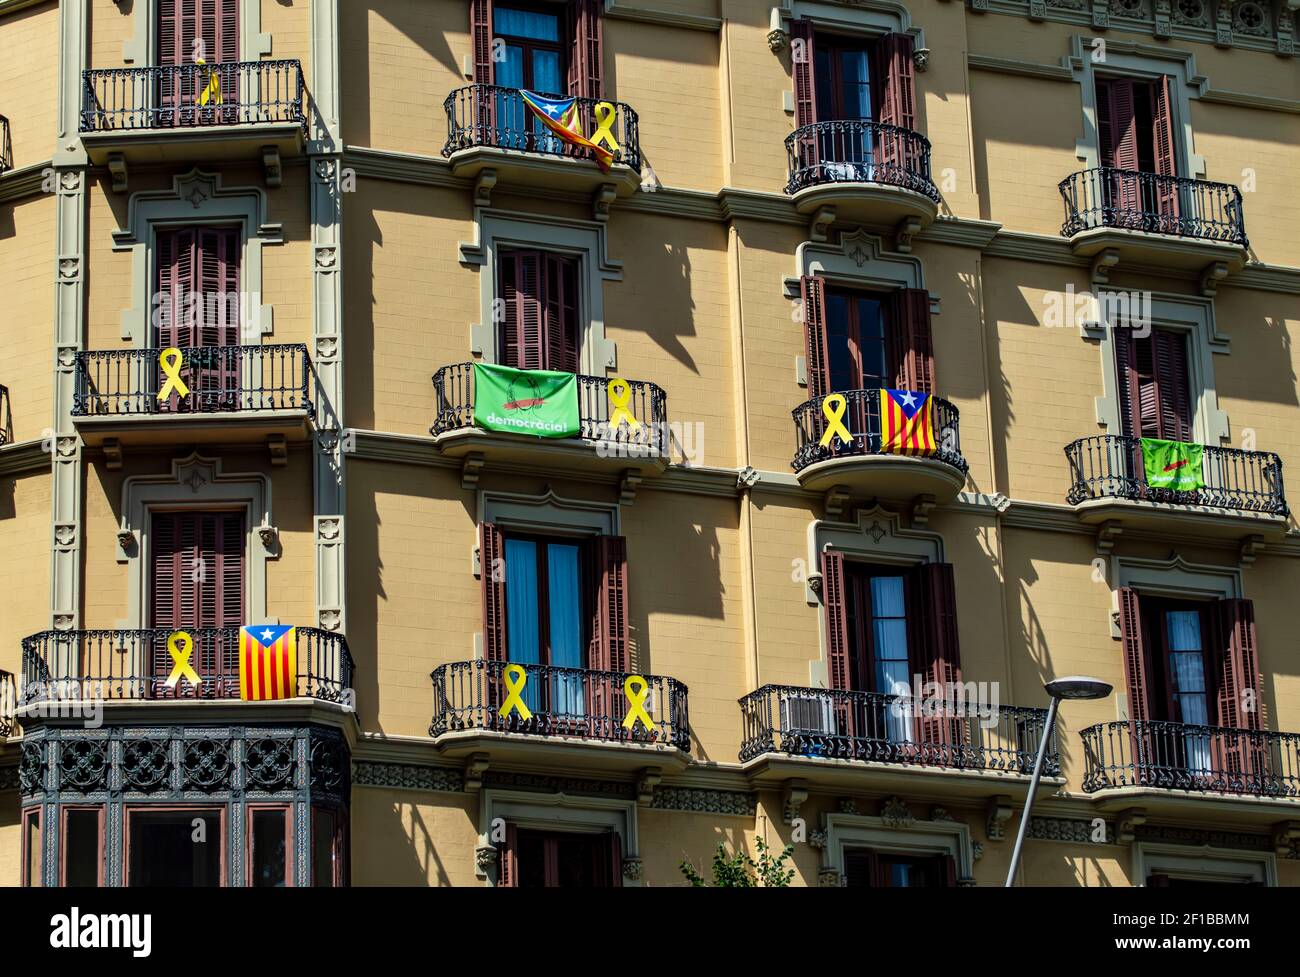 Barcellona, Spagna - 24 luglio 2019: Bandiere catalane e nastri di protesta sui balconi di un edificio nella città di Barcellona, Catalogna, Spagna Foto Stock